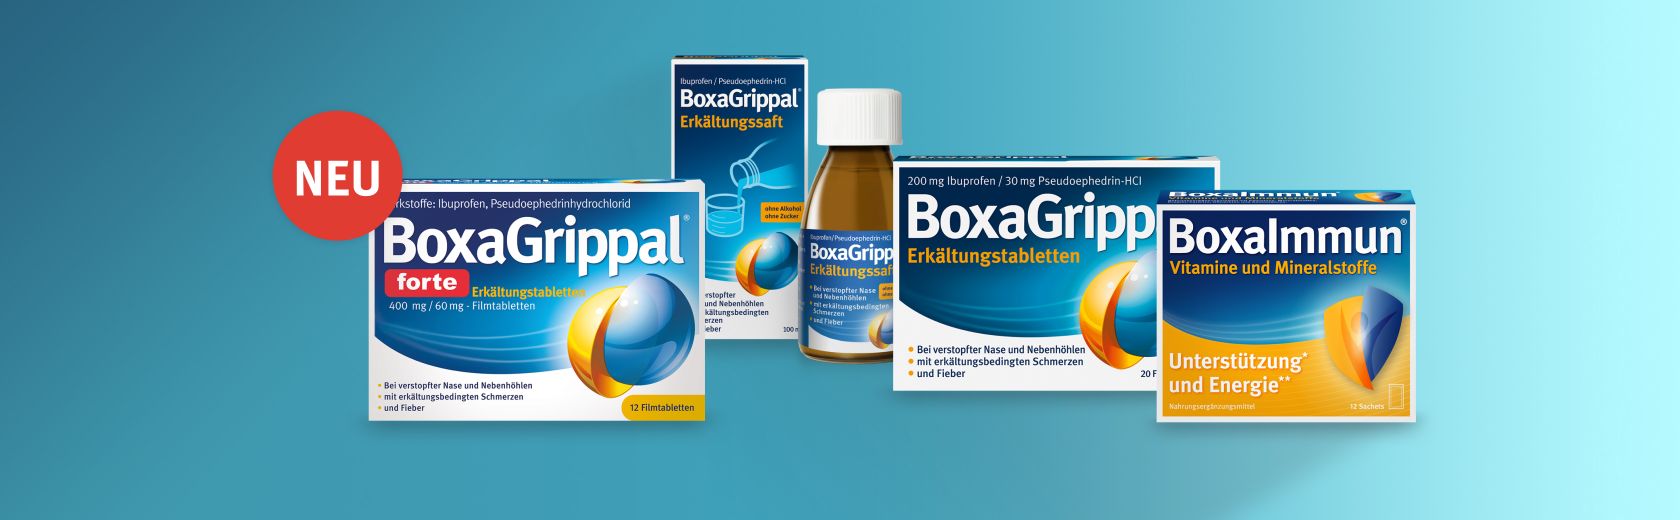 Verschiedene Produkte von BoxaGrippal